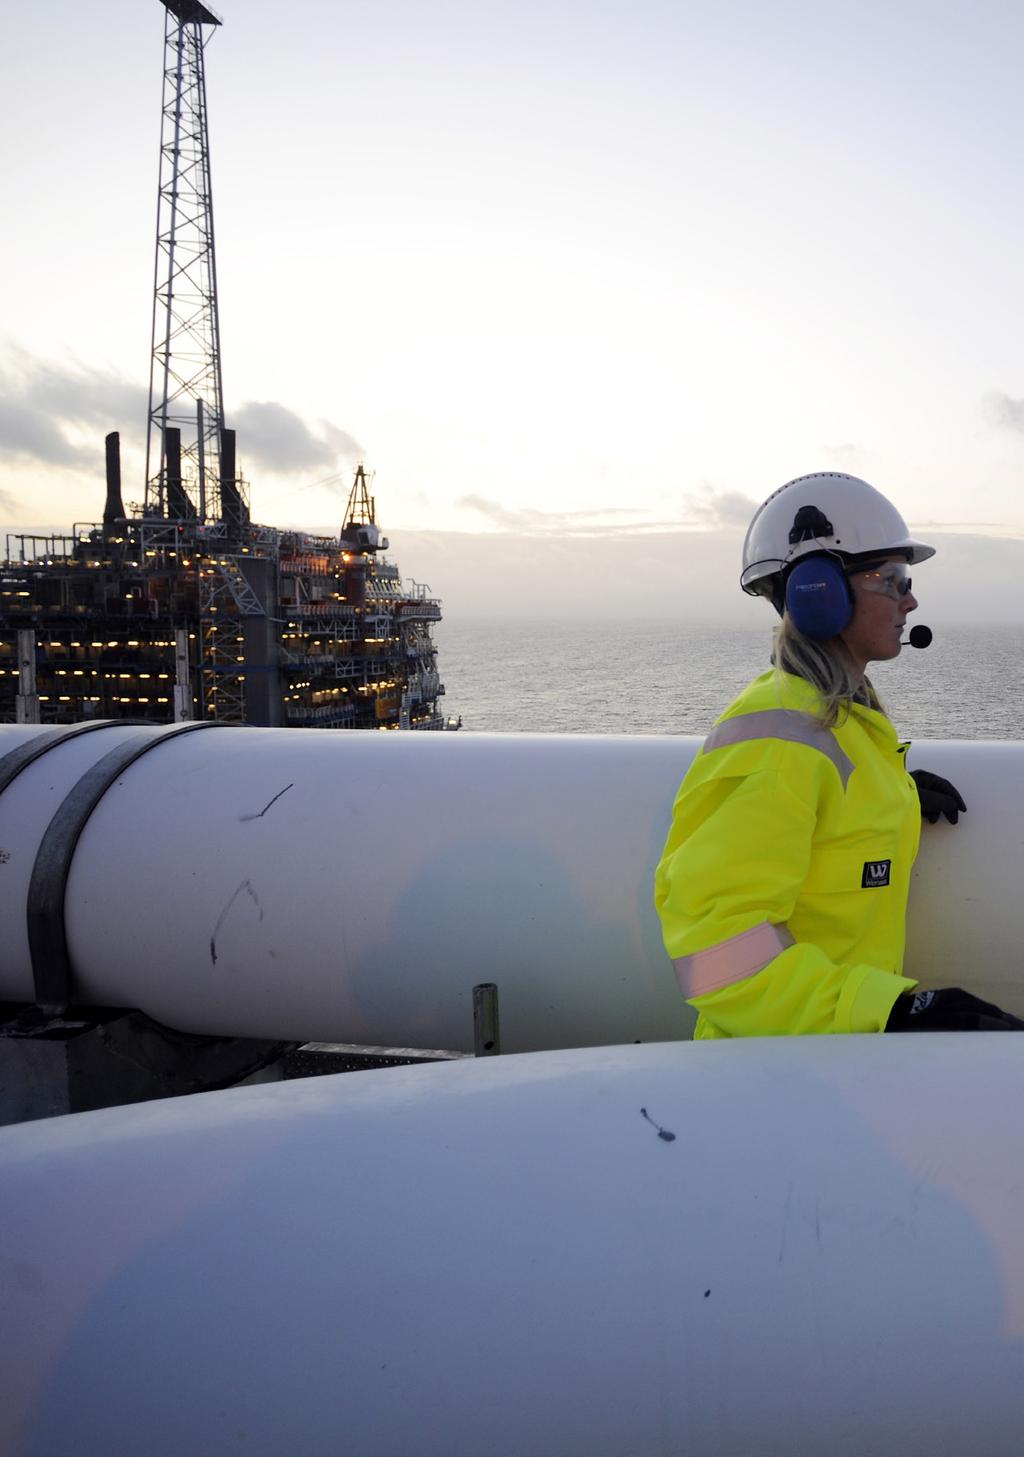 Sleipner gass til Europa Et knutepunkt for gassproduksjon og transport på norsk sokkel 120 millioner kroner i inntekter per dag Statoil leverer ca 20% av gassen som brukes i Europa og ca 40 % av